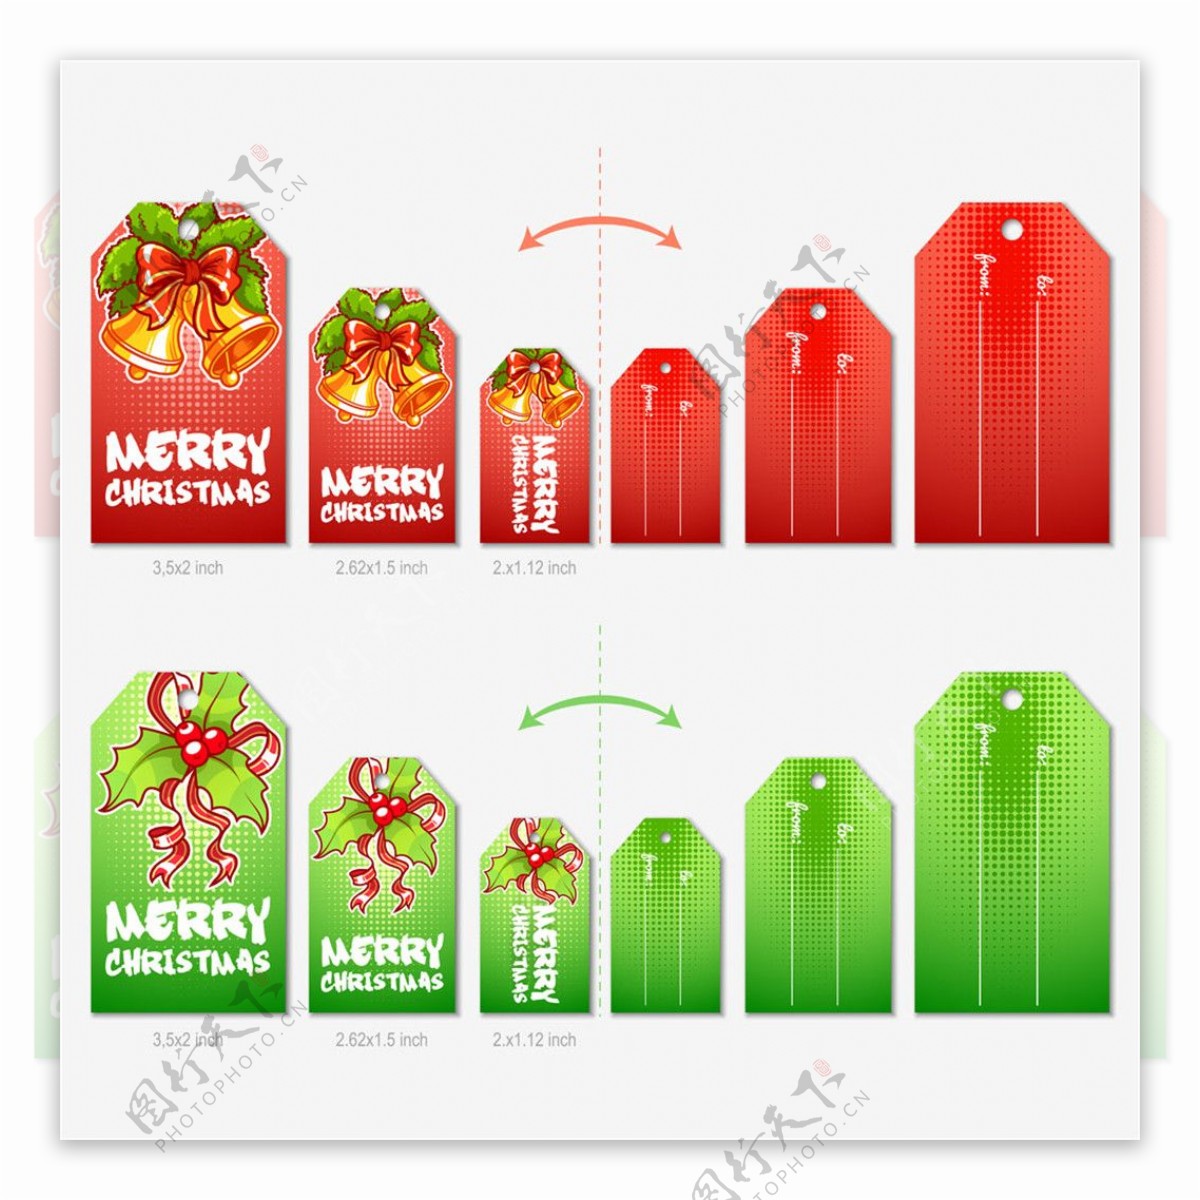 红绿色圣诞卡片图片